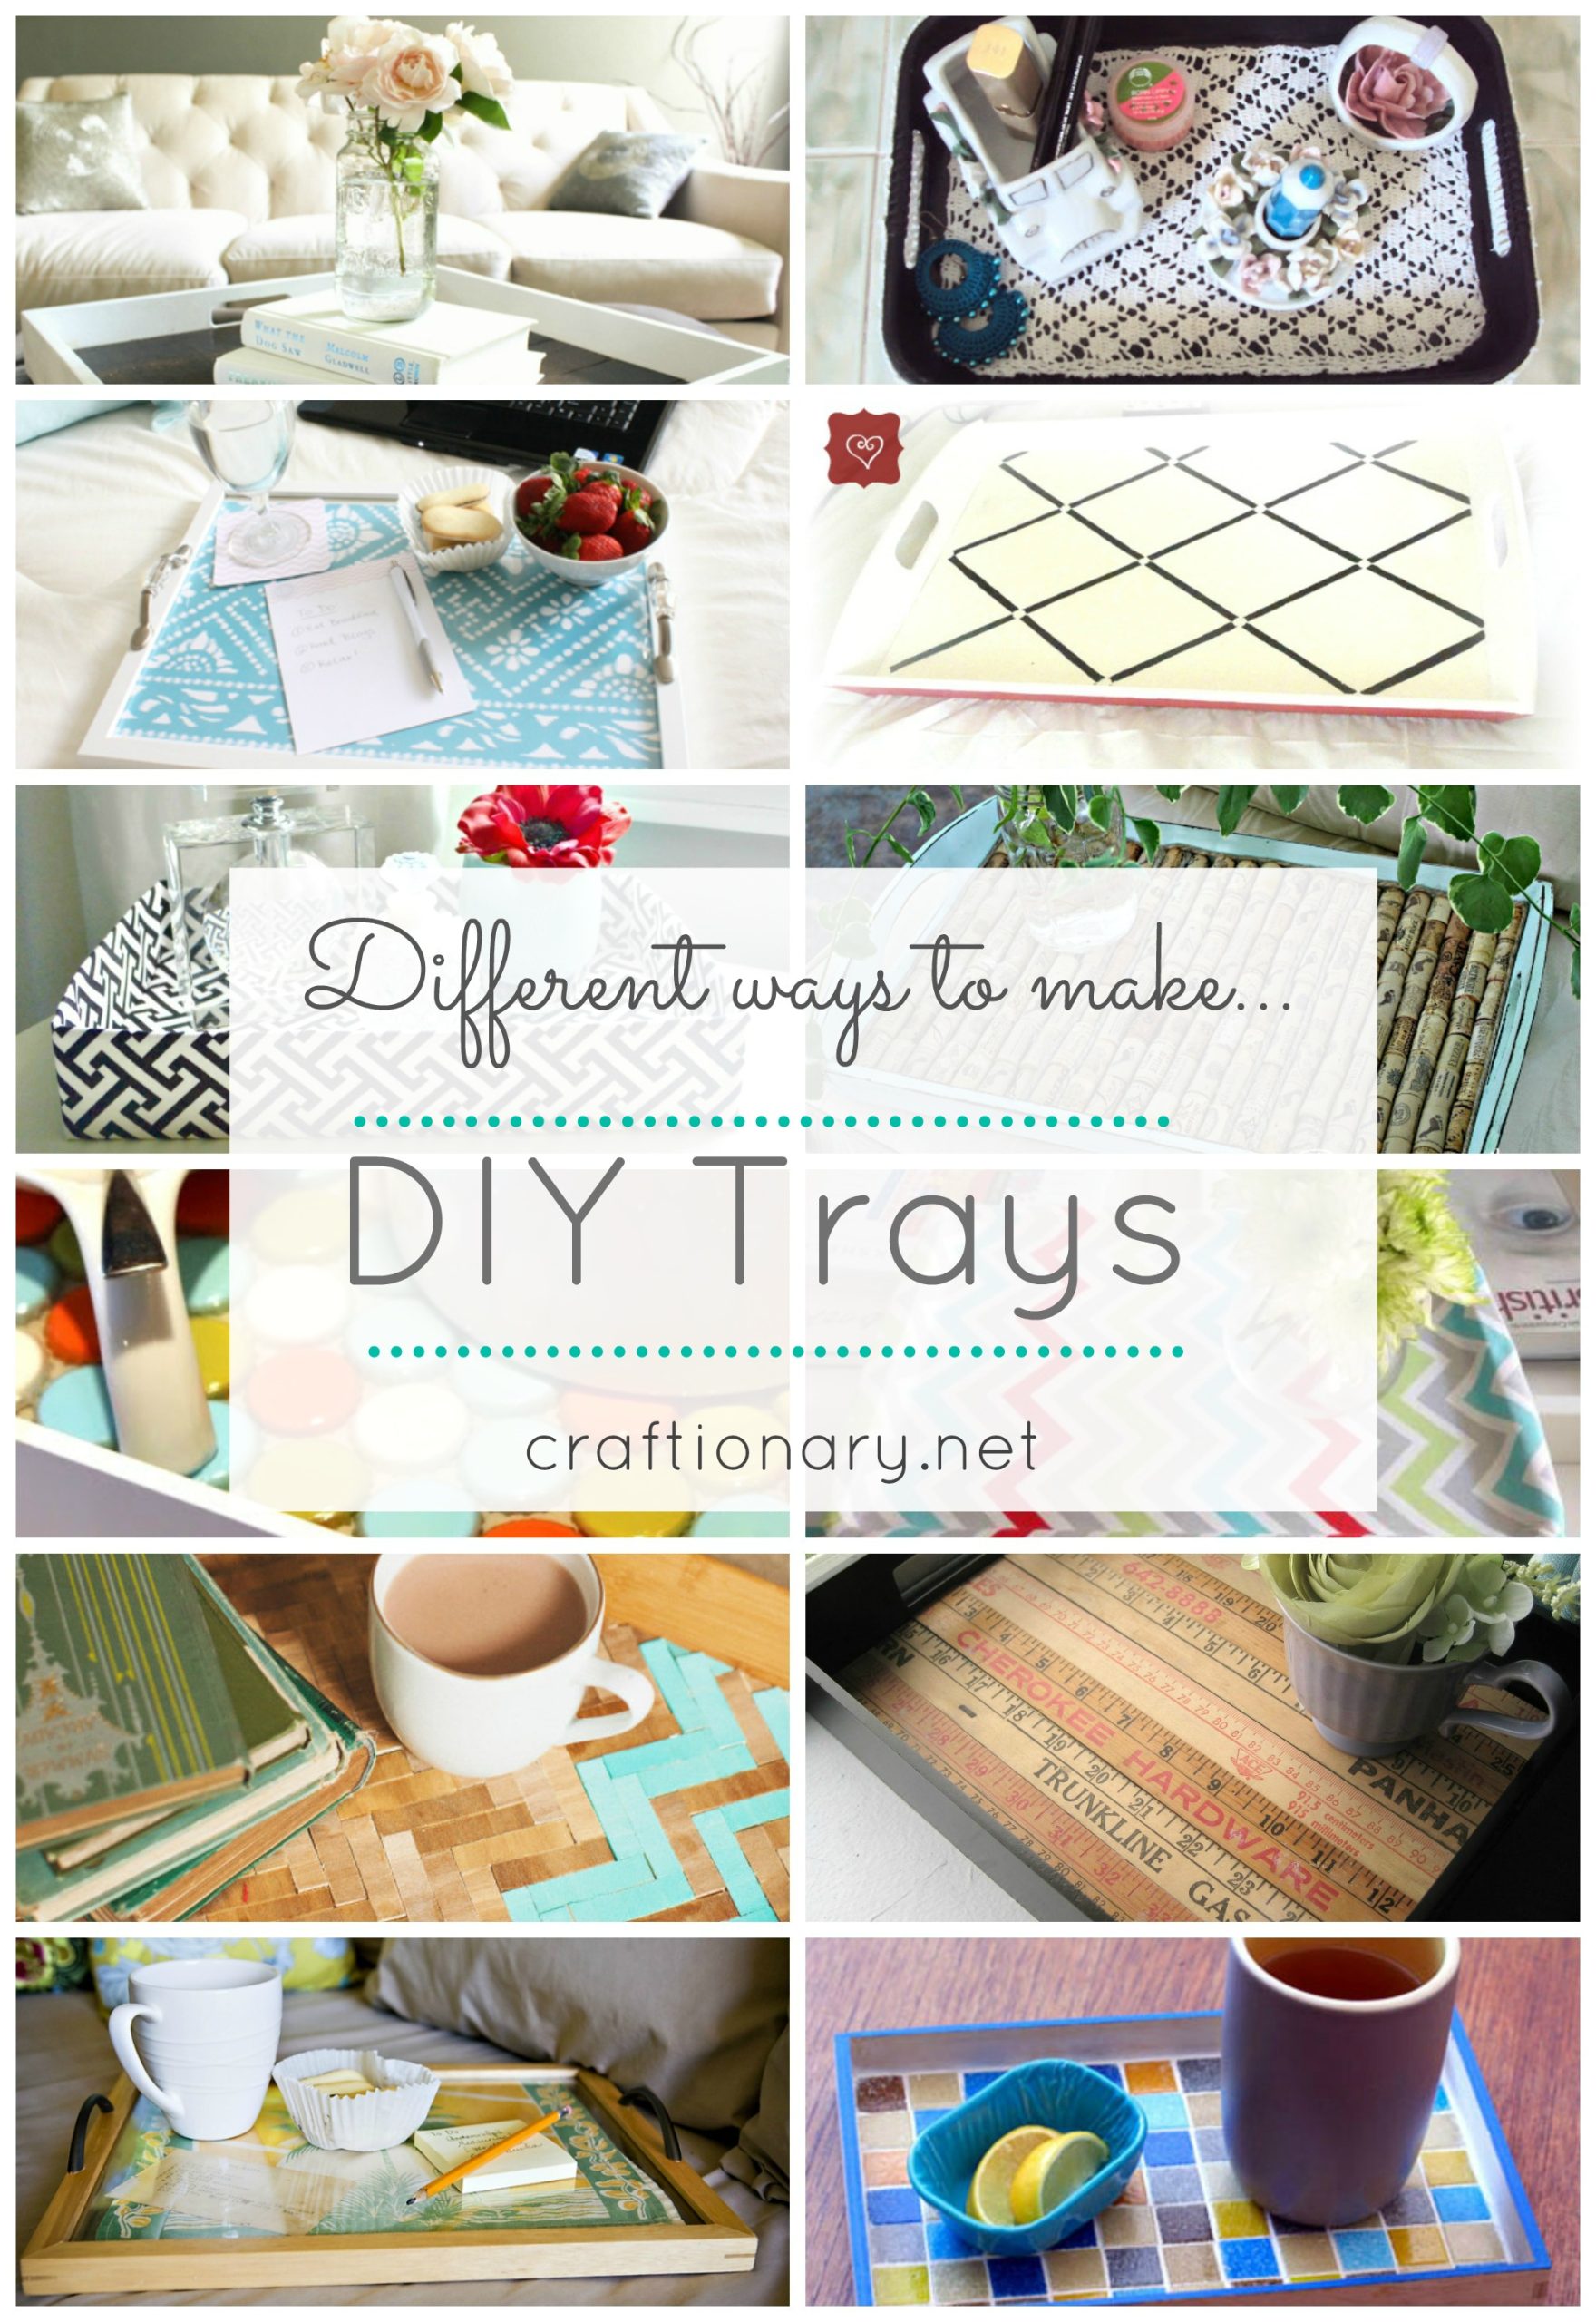 15 Decorative DIY trays for home (tutorials) - Craftionary